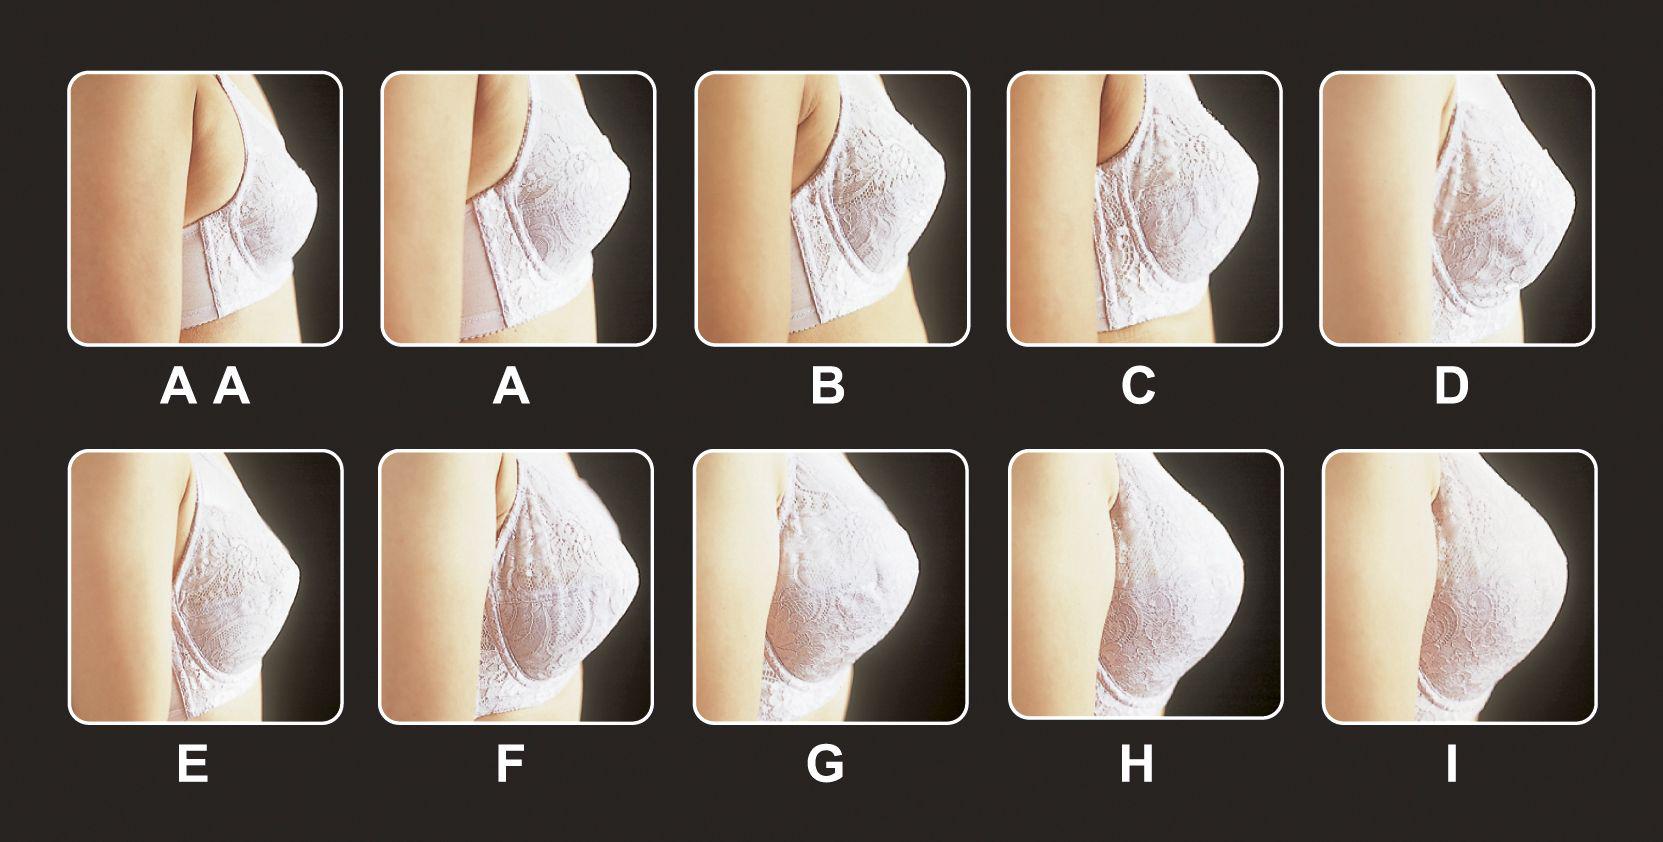 罩杯主要用来衡量女性胸部的大小,一般指胸部的平坦程度,胸部凸起得越